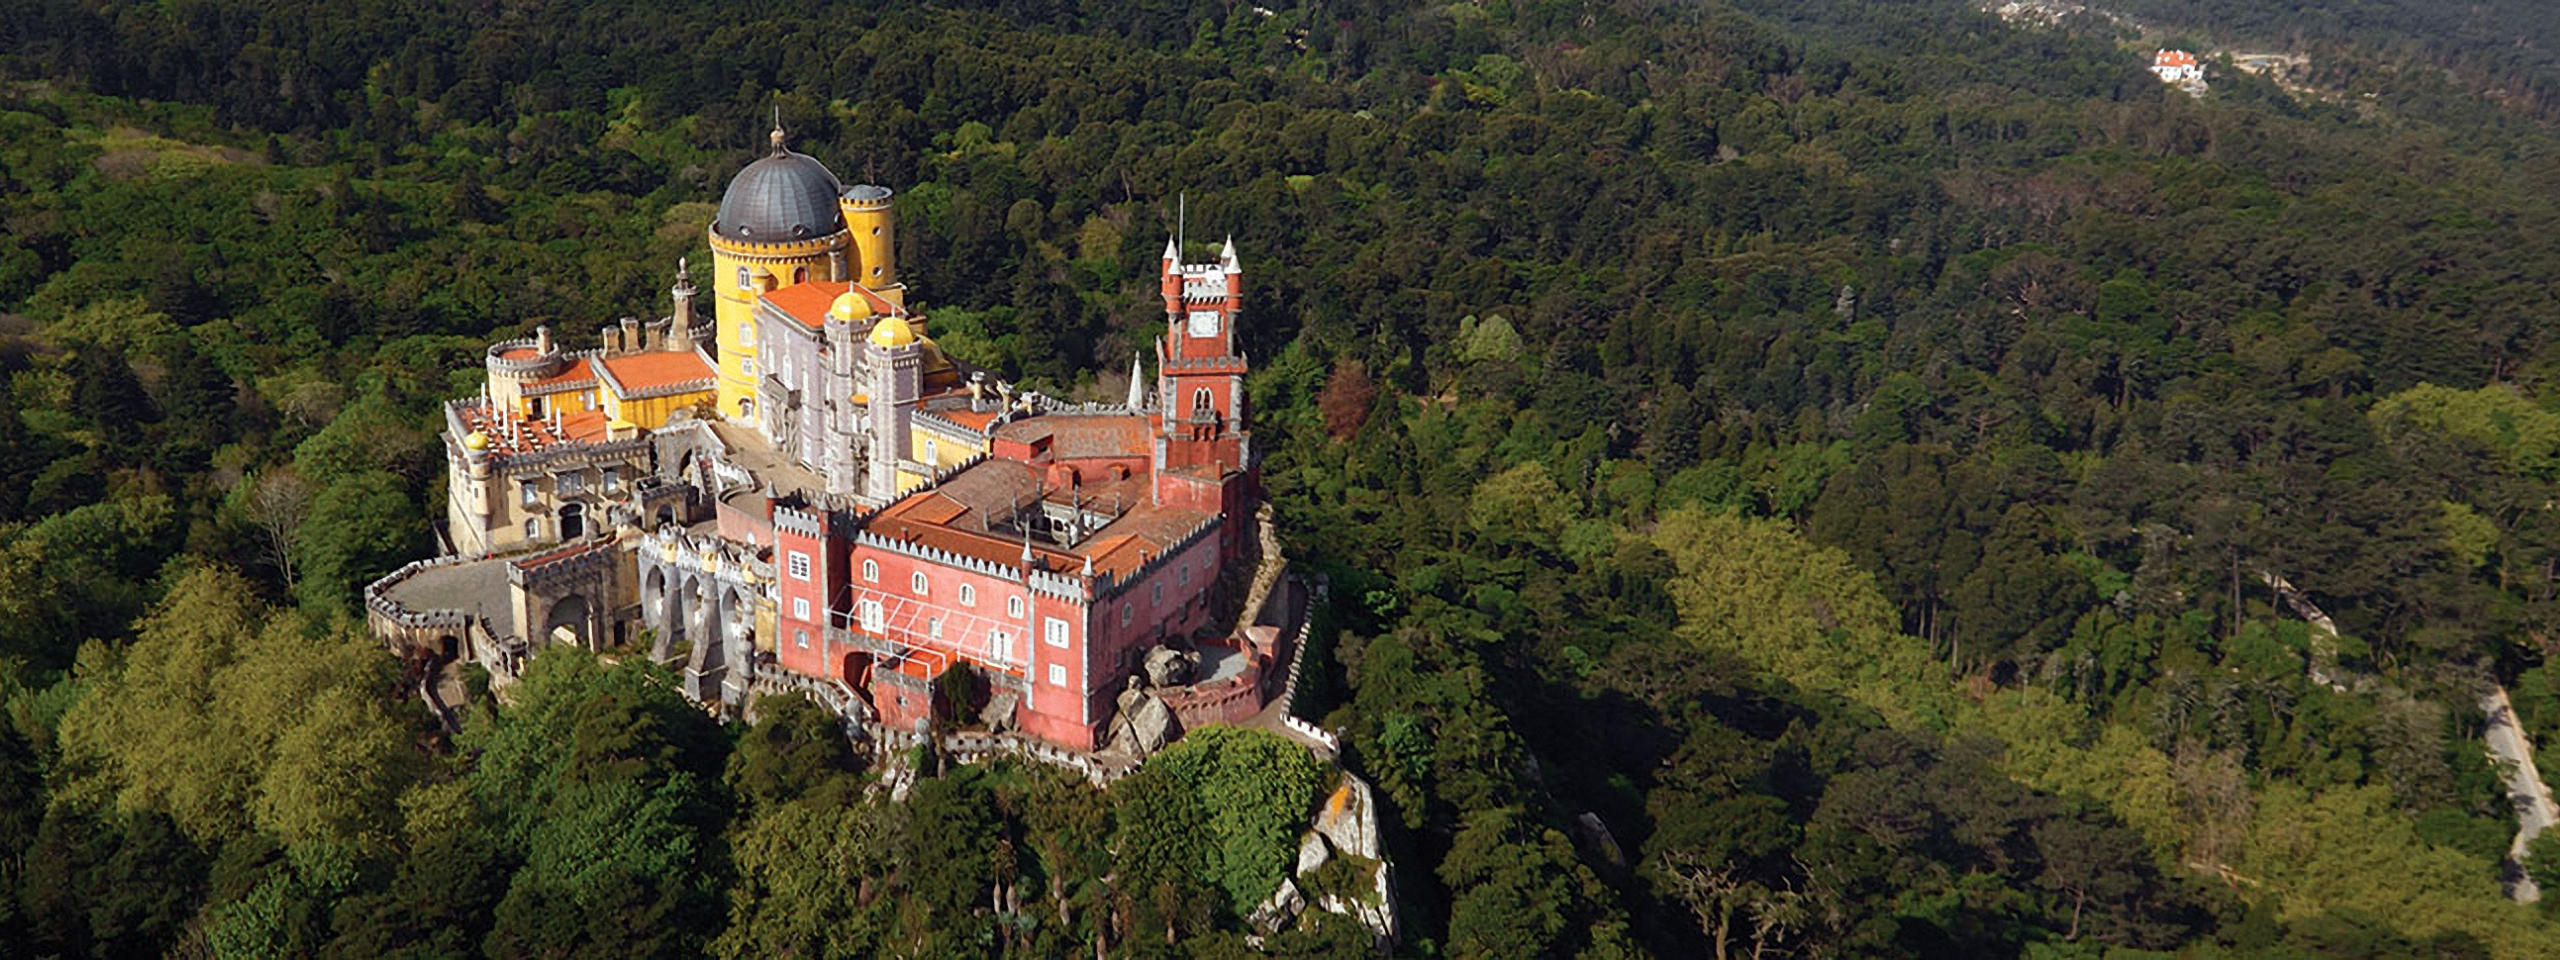 Vista aérea do Palácio da Pena (o antigo mosteiro em vermelho e o novo palácio em amarelo)